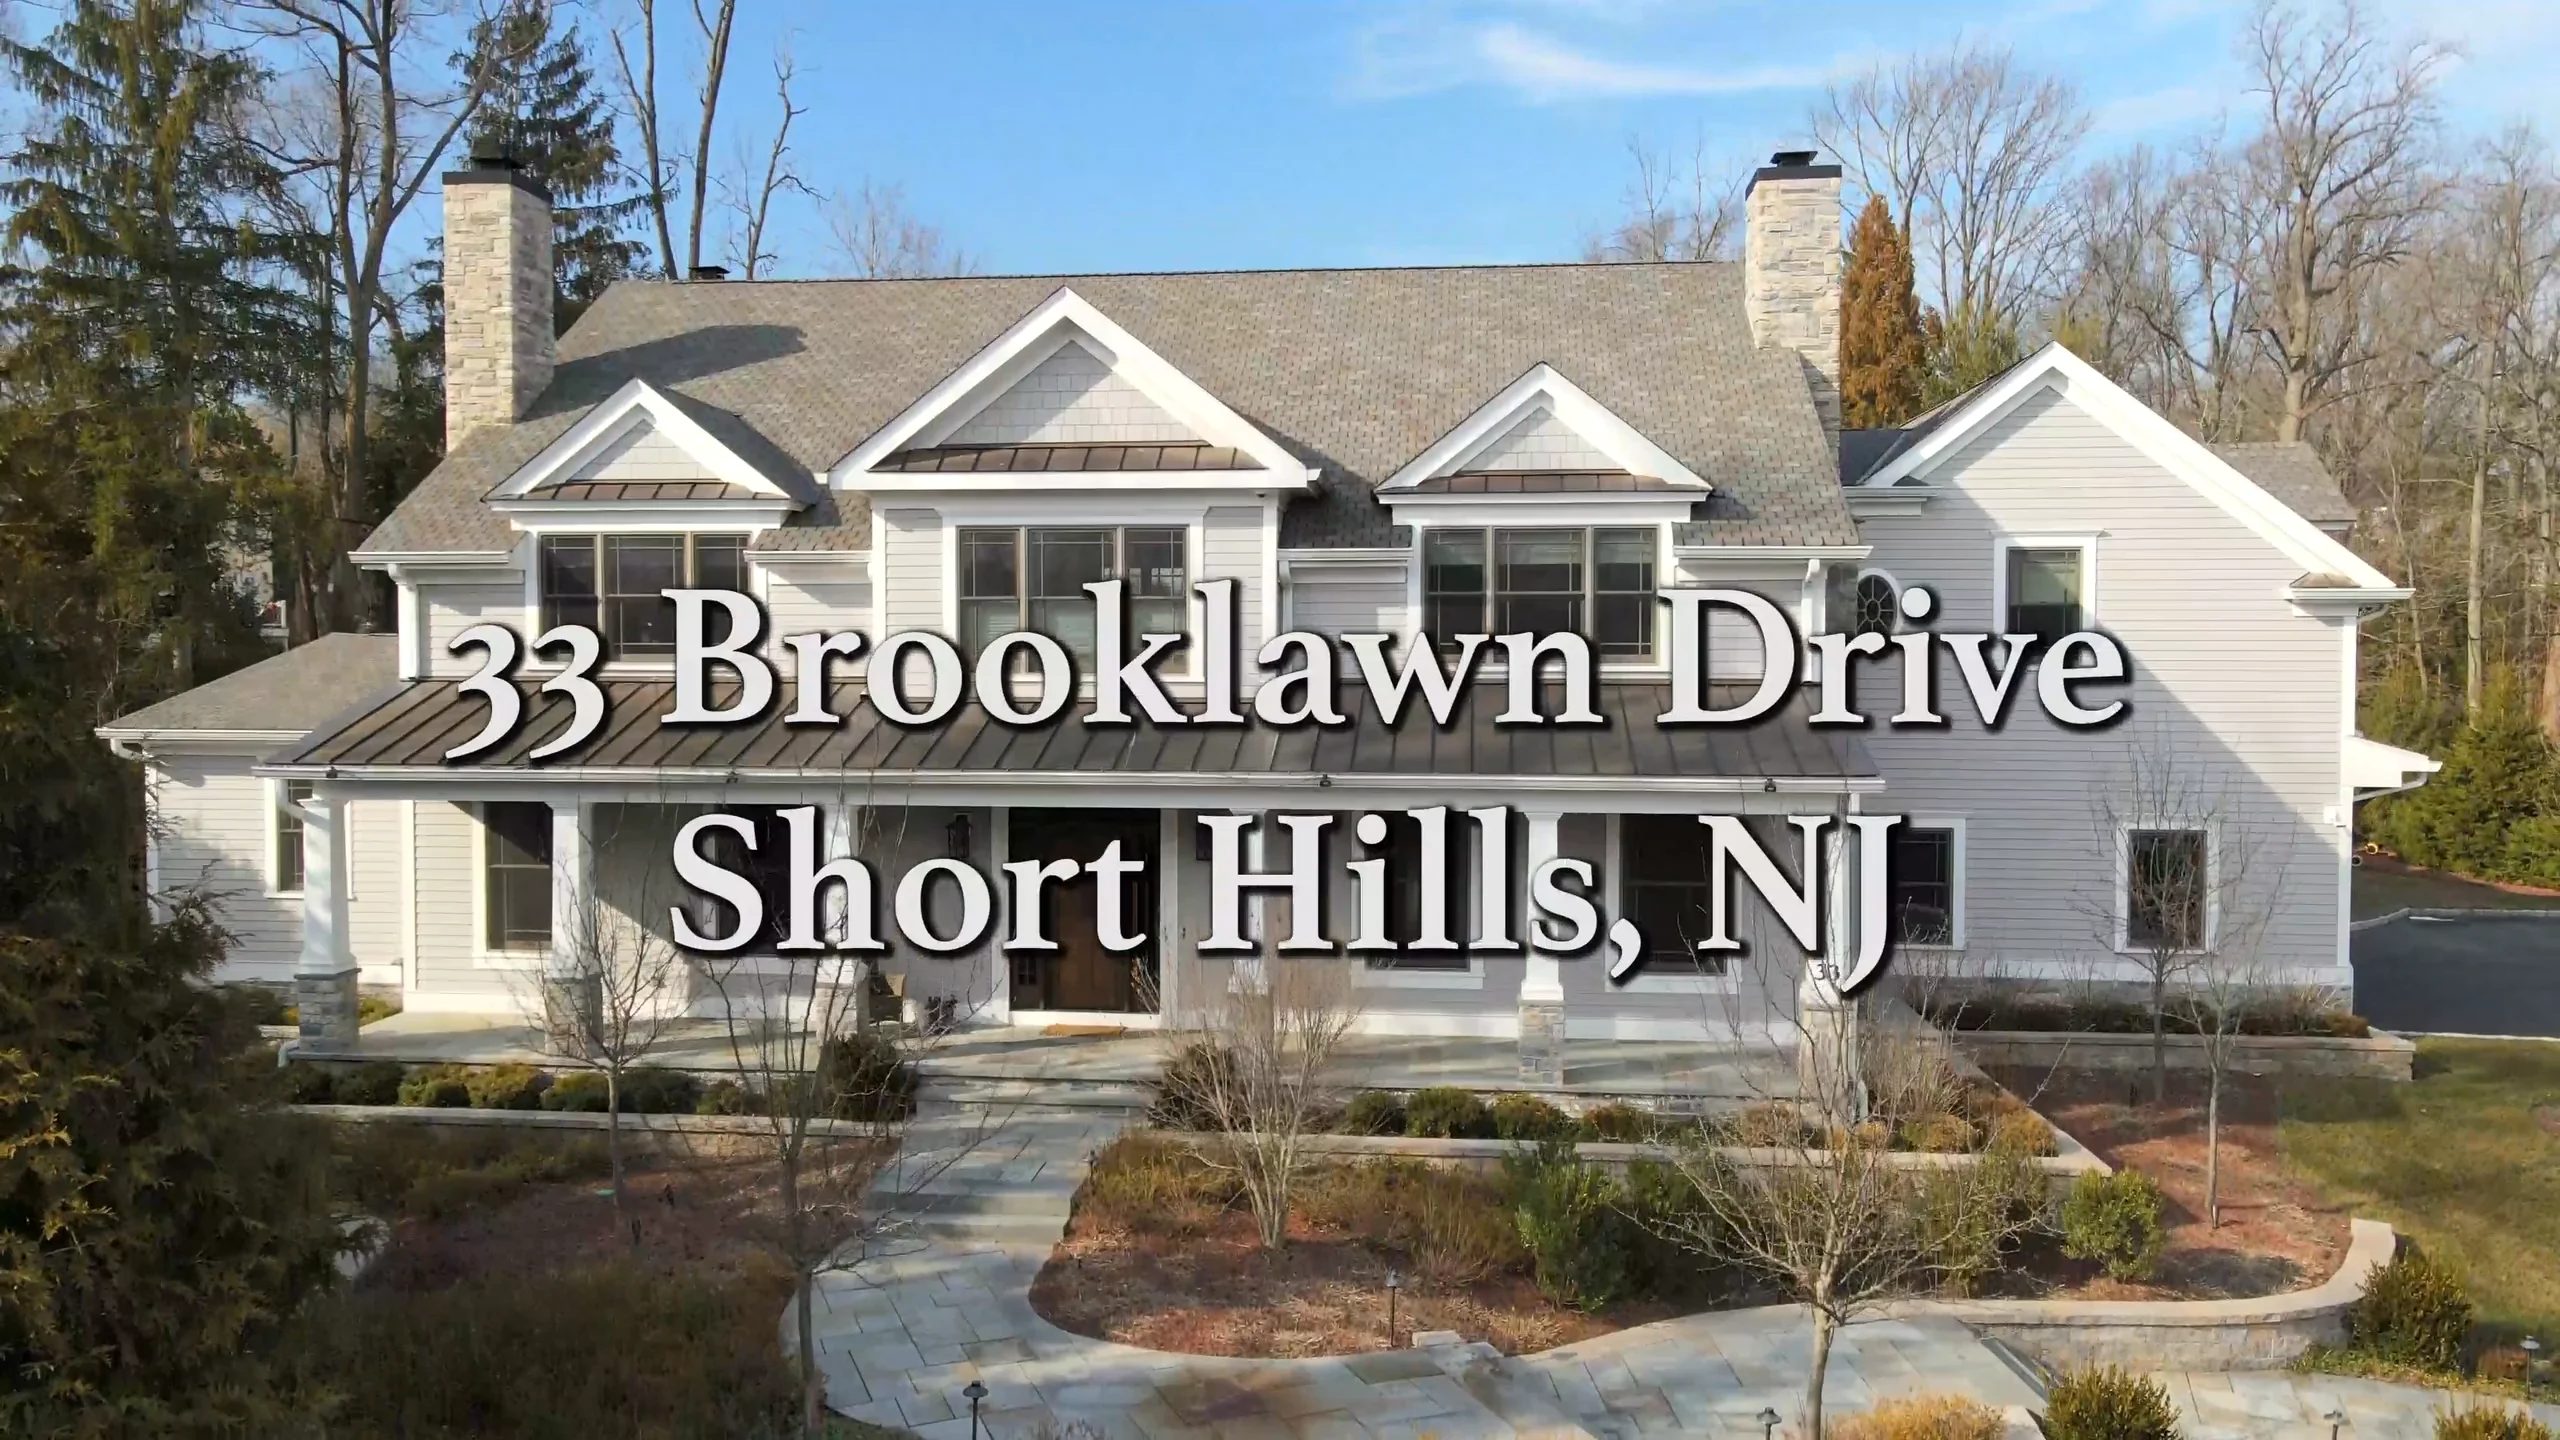 33 Brooklawn Drive Short Hills, NJ on Vimeo